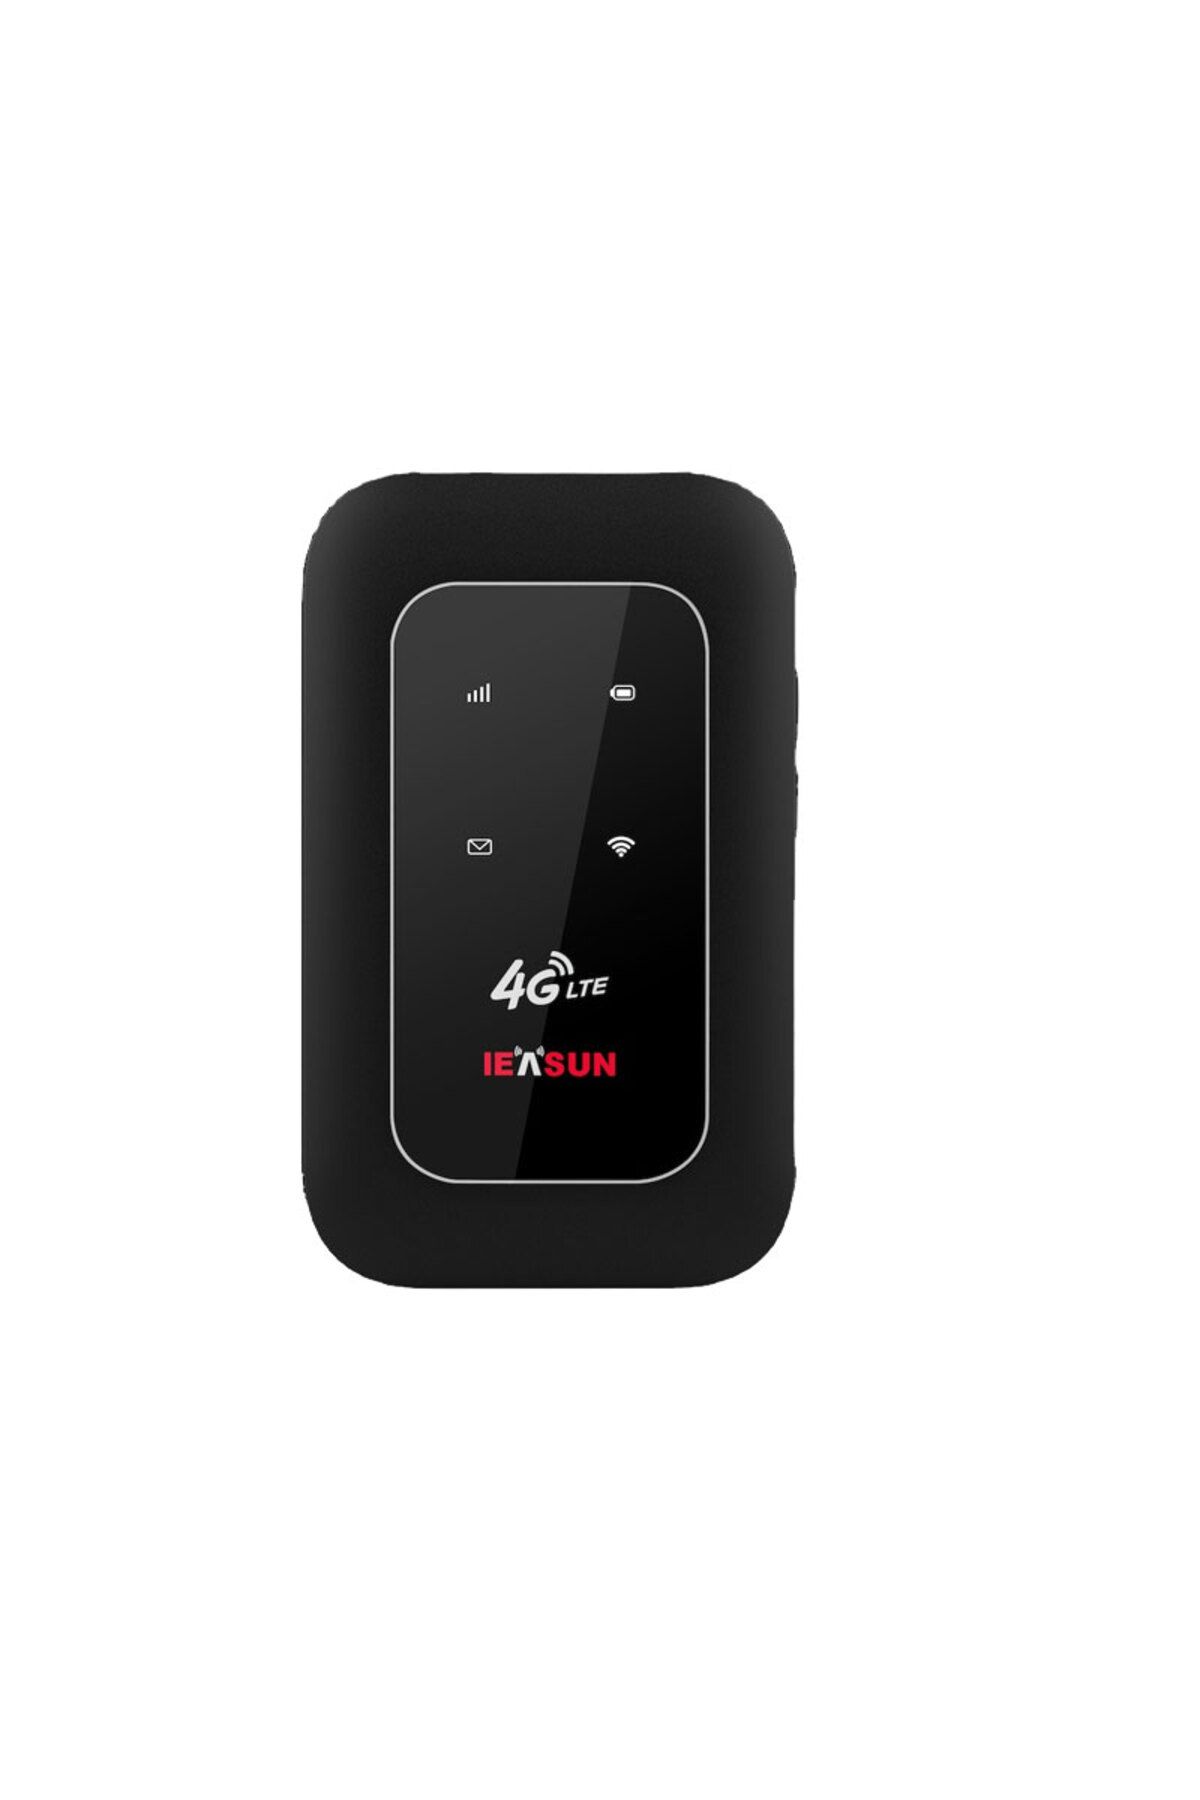 IEASUN 4G LTE Kablosuz modem Taşınabilir Mobil WiFi Bağlantı Noktası 150 Mbps